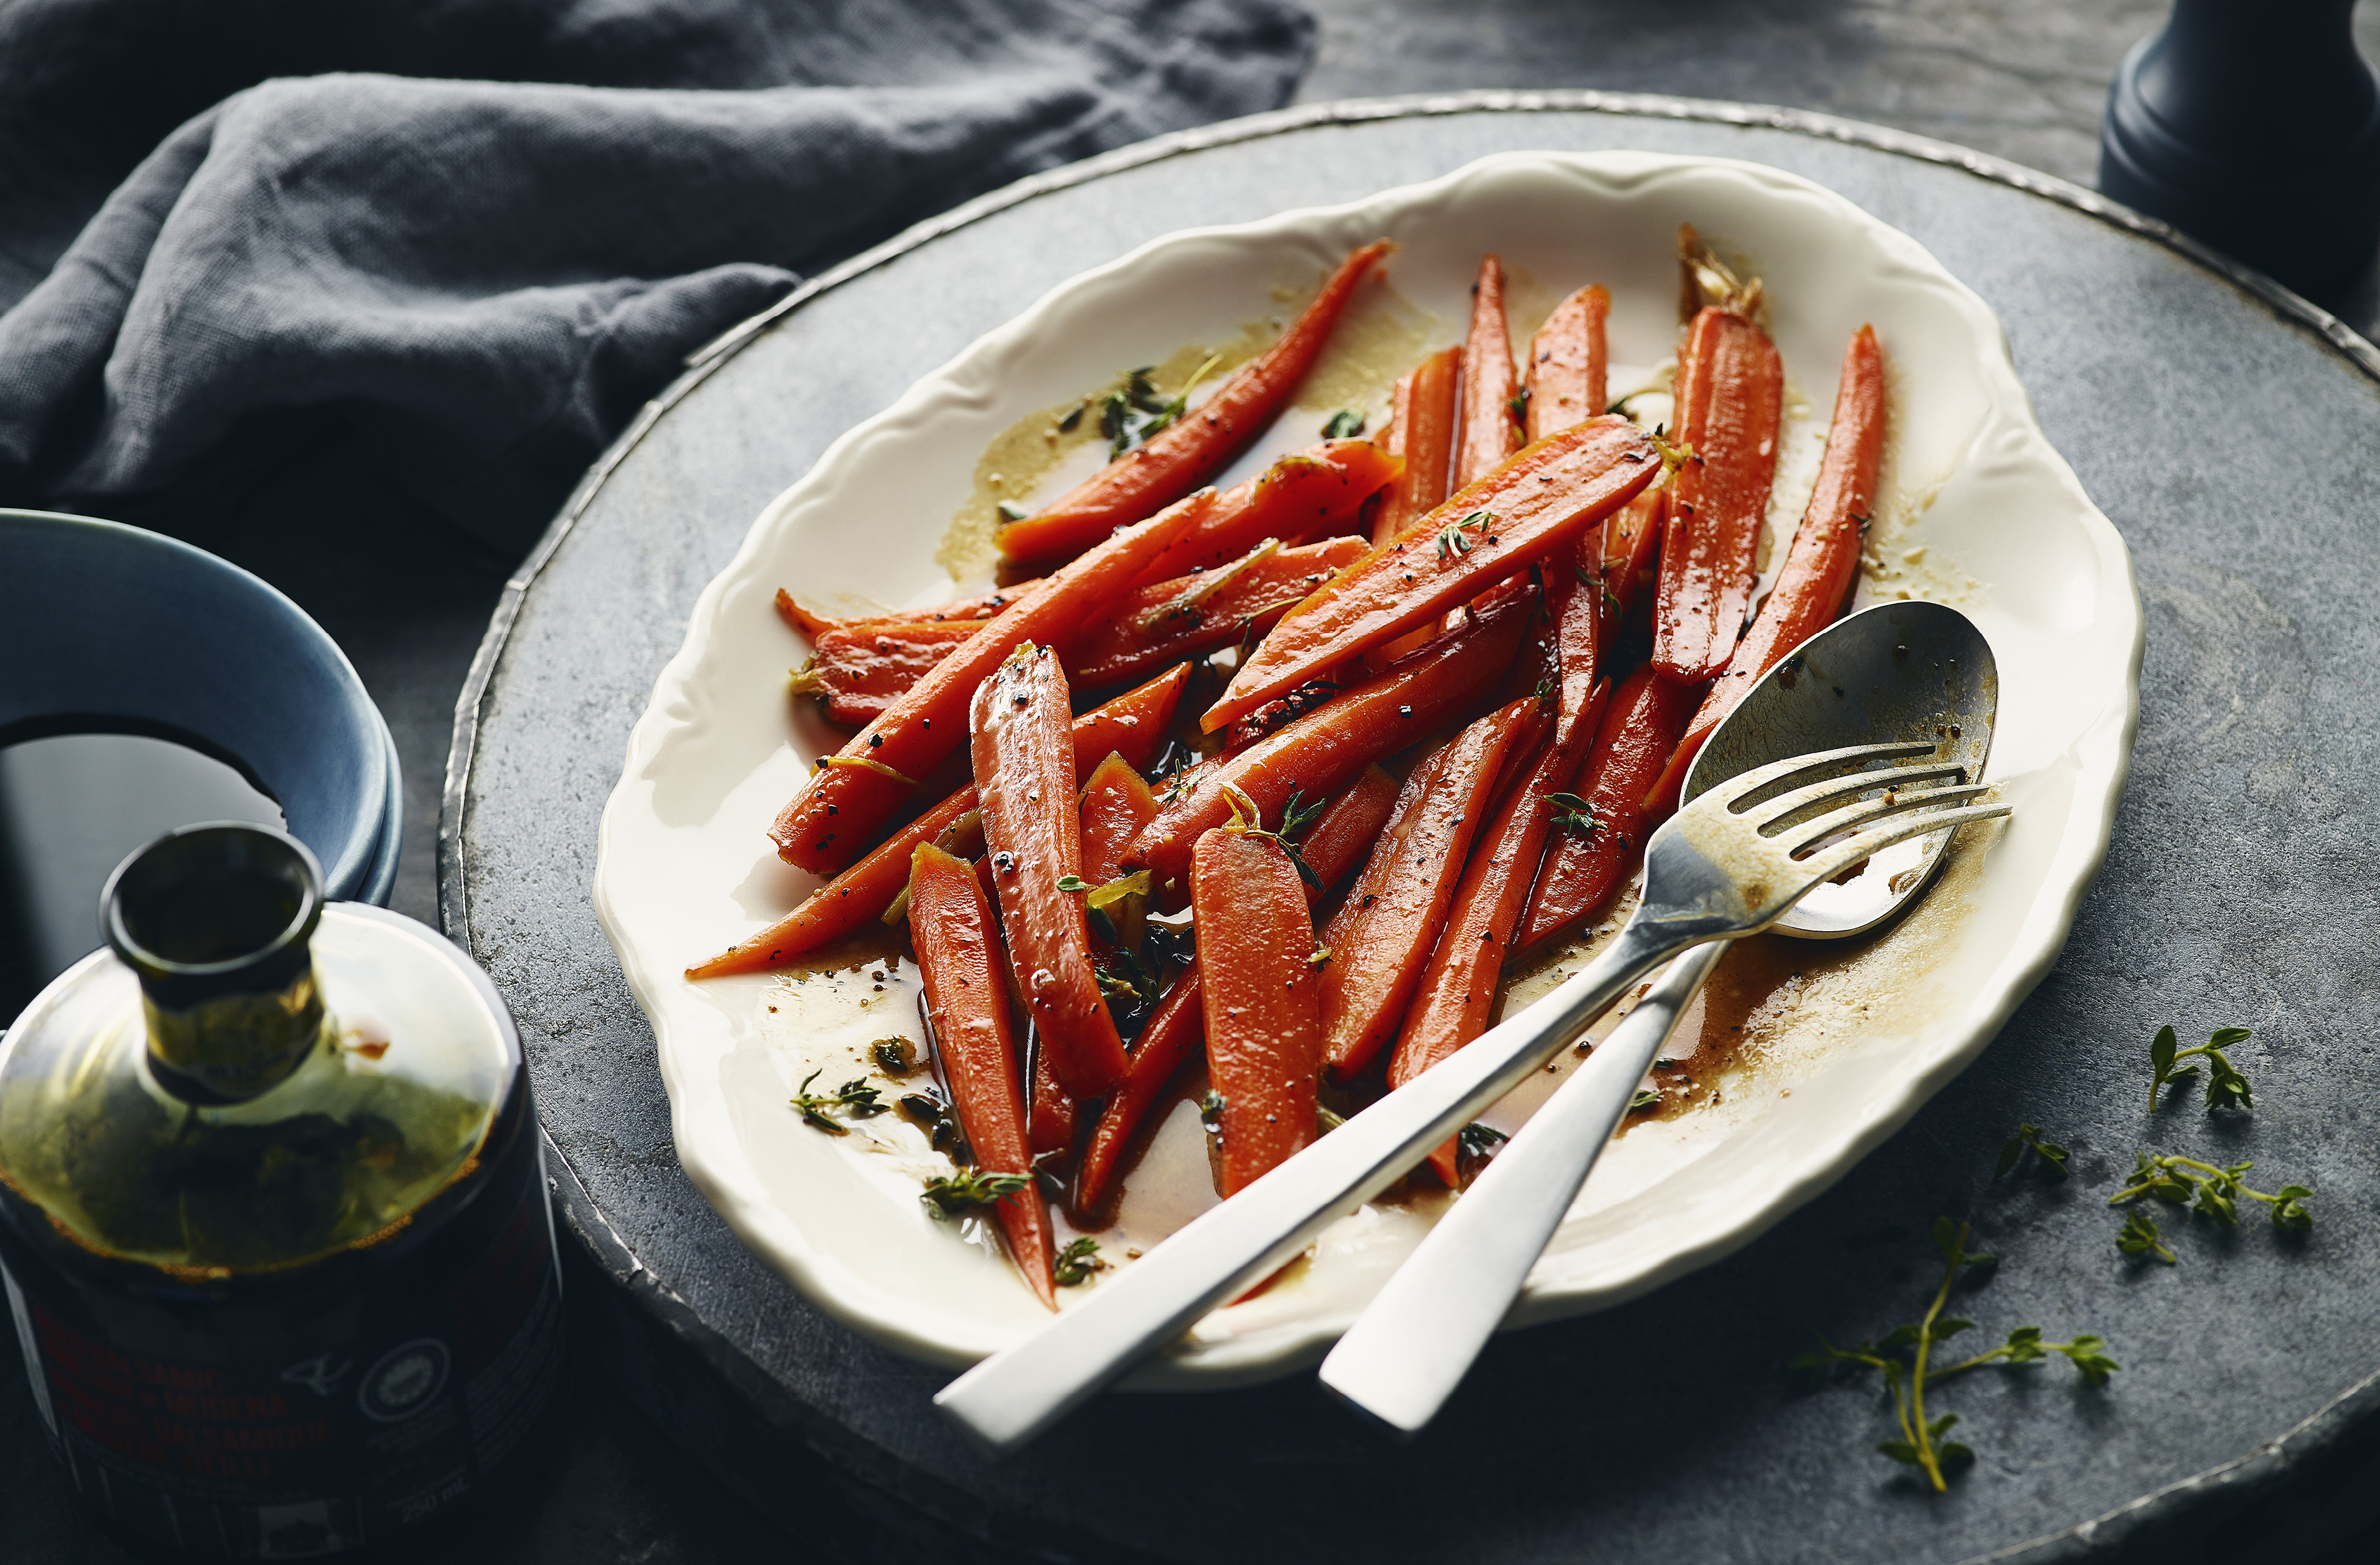 A large plate full of balsamic vinegar glazed carrots